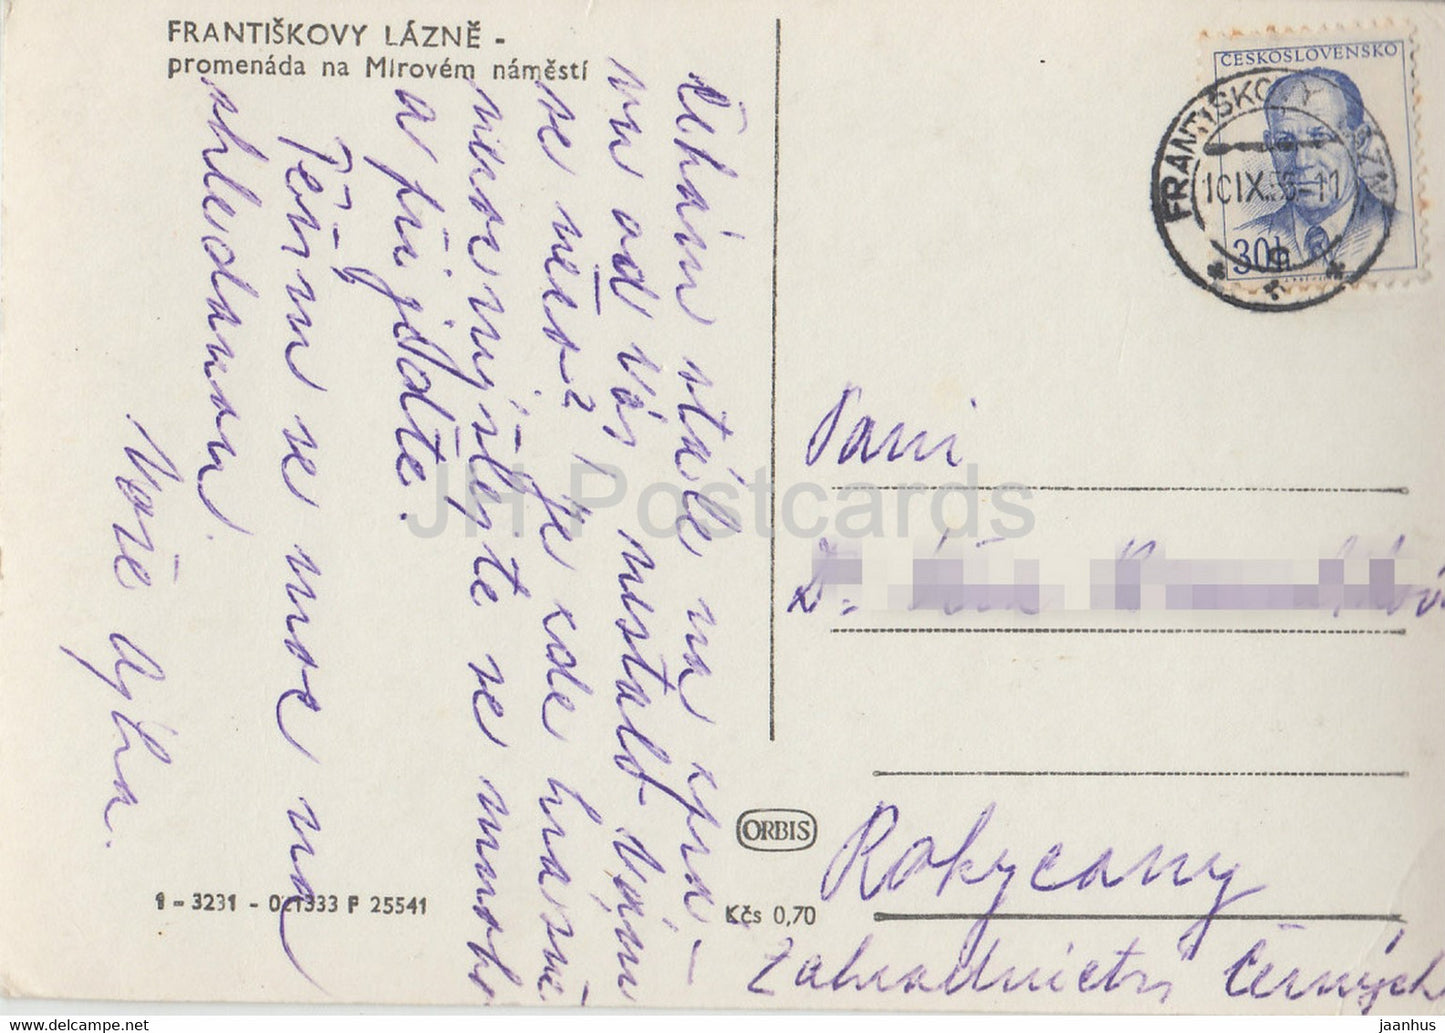 Frantiskovy Lazne - promenada na Mirovem namesti - 1955 - old postcard - Czech Republic - Czechoslovakia - used